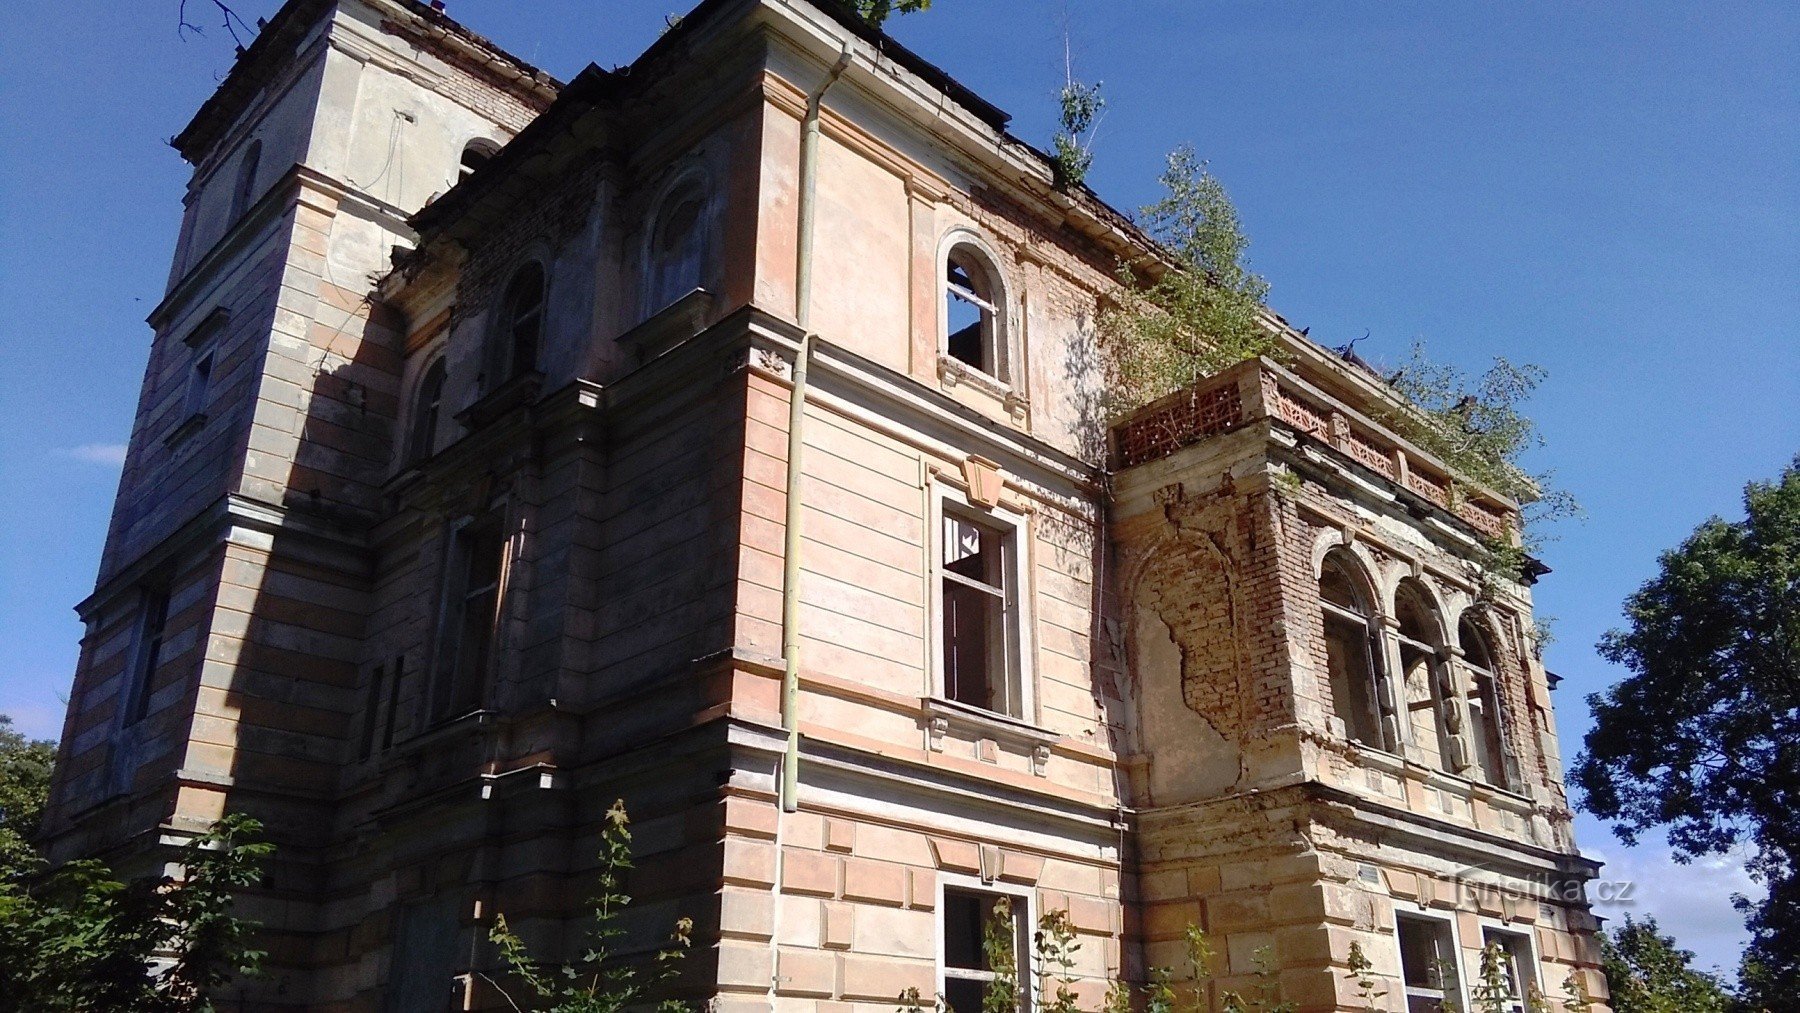 Dubí - une villa, aujourd'hui en ruine, autrefois la résidence représentative du fabricant Tschinkel